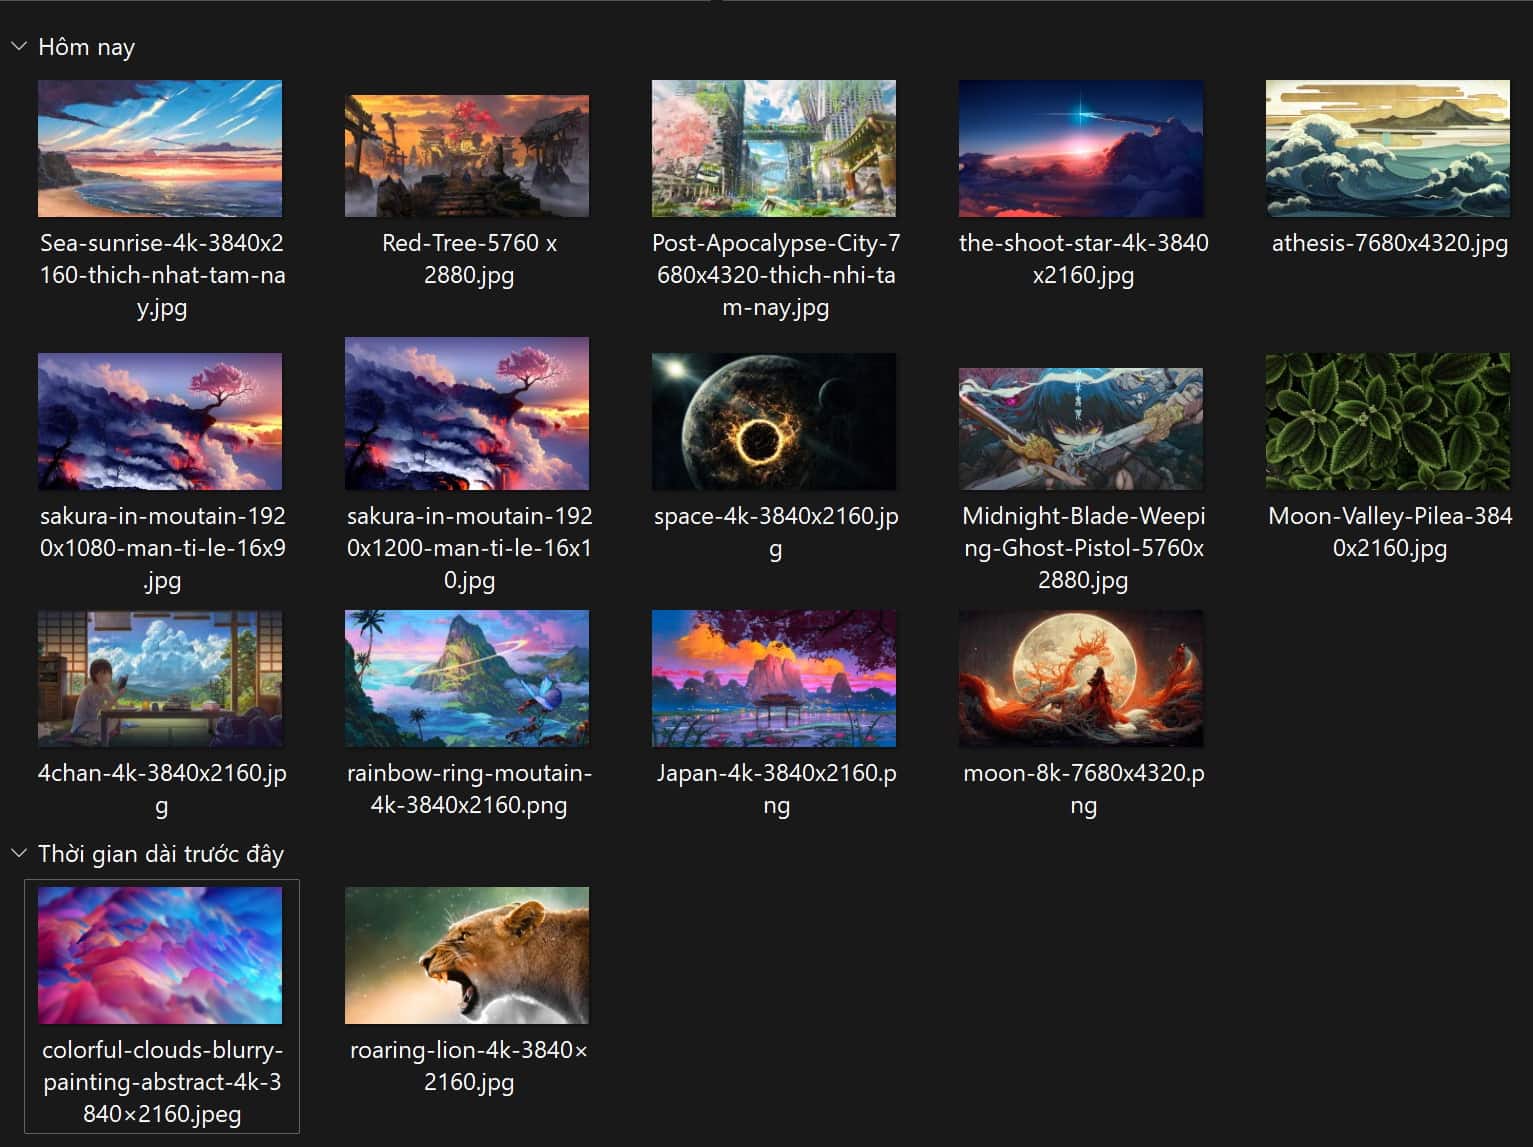 Share folder hình nền fantasy cho PC rất đẹp mình sưu tập được